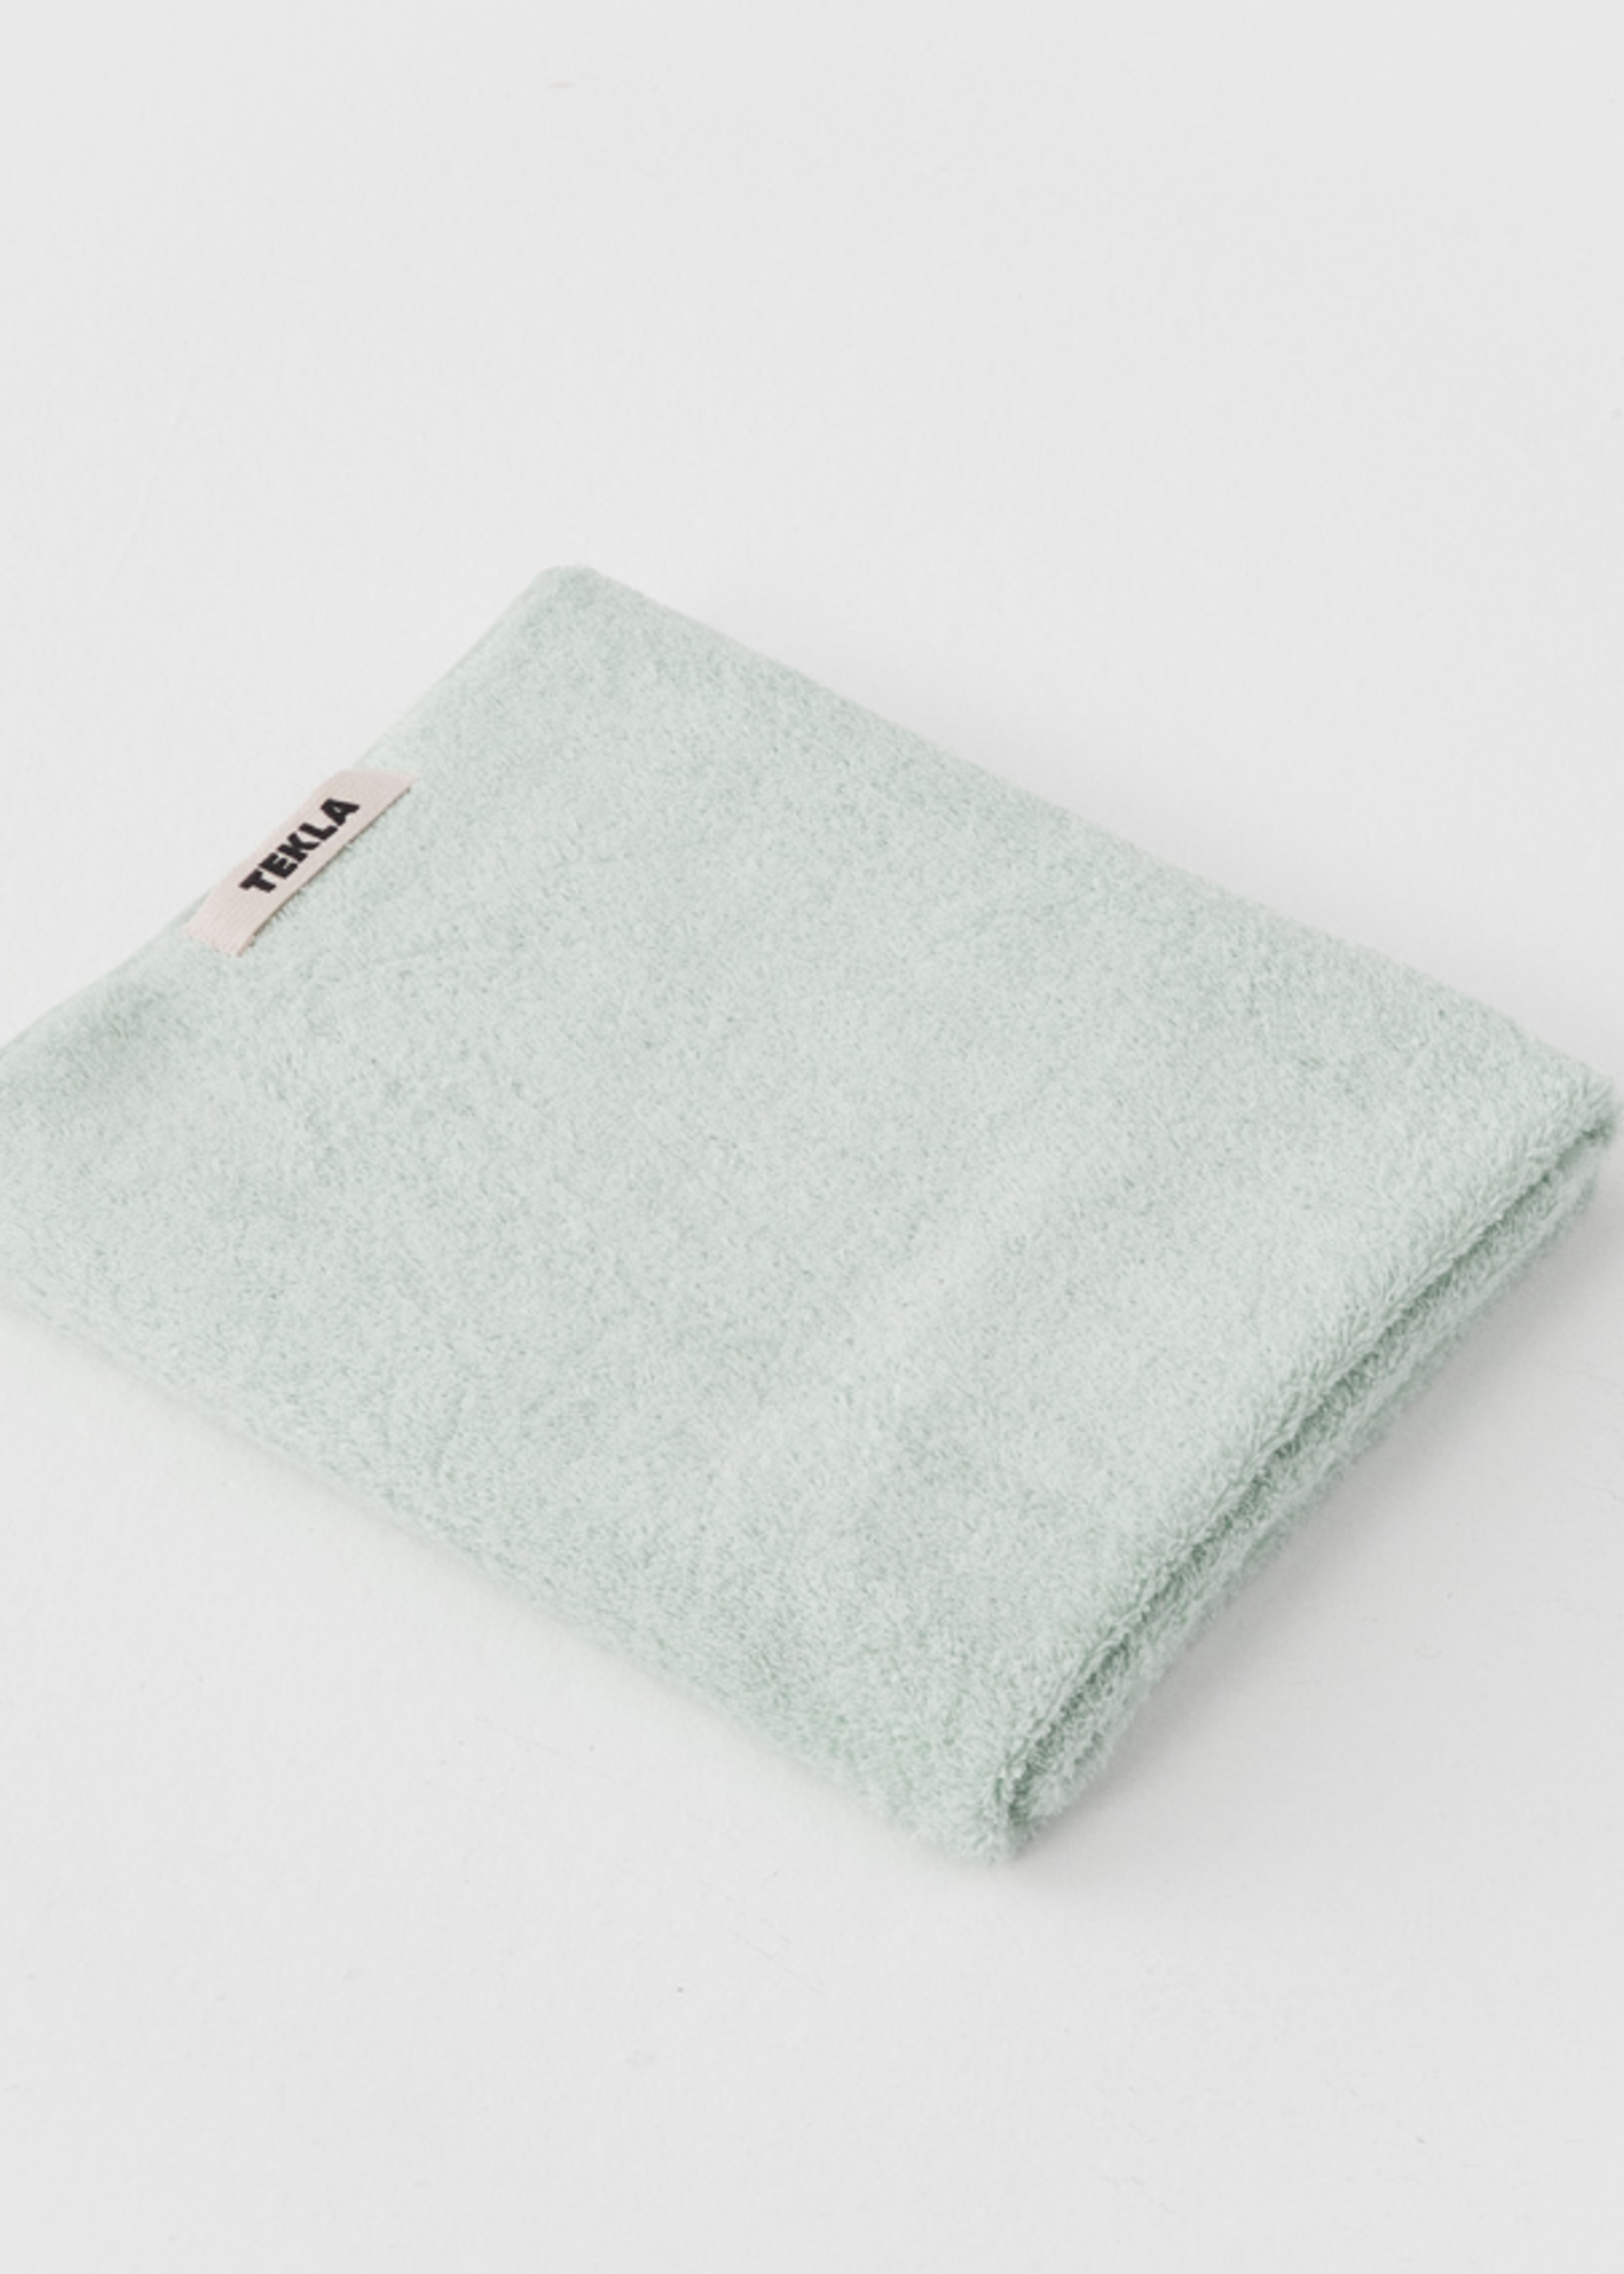 TEKLA Organic Bath Towel  in Mint